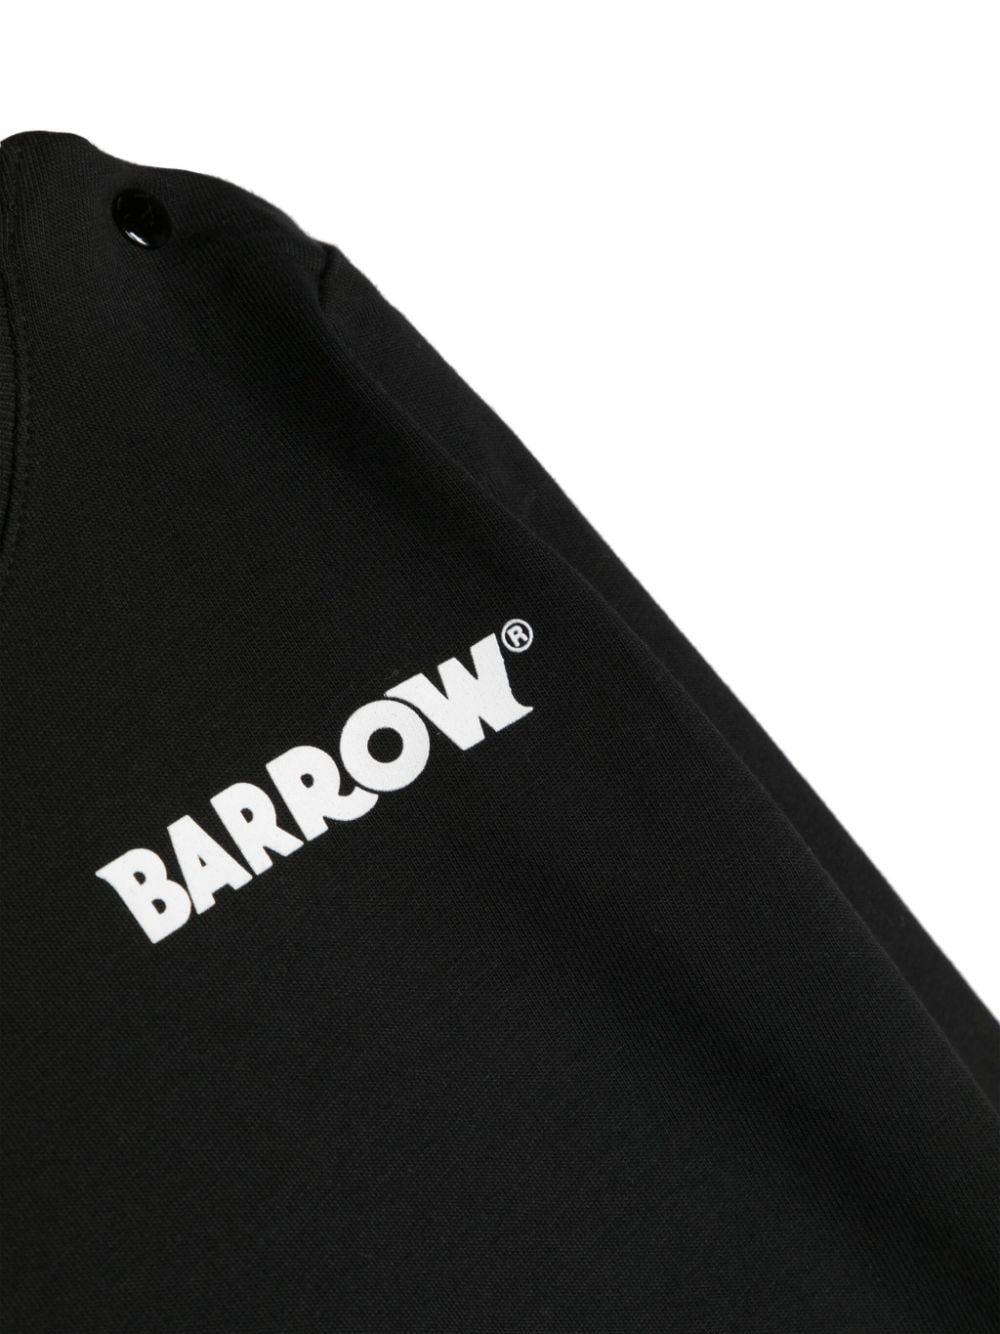 Barrow kids T-shirt met logoprint Zwart